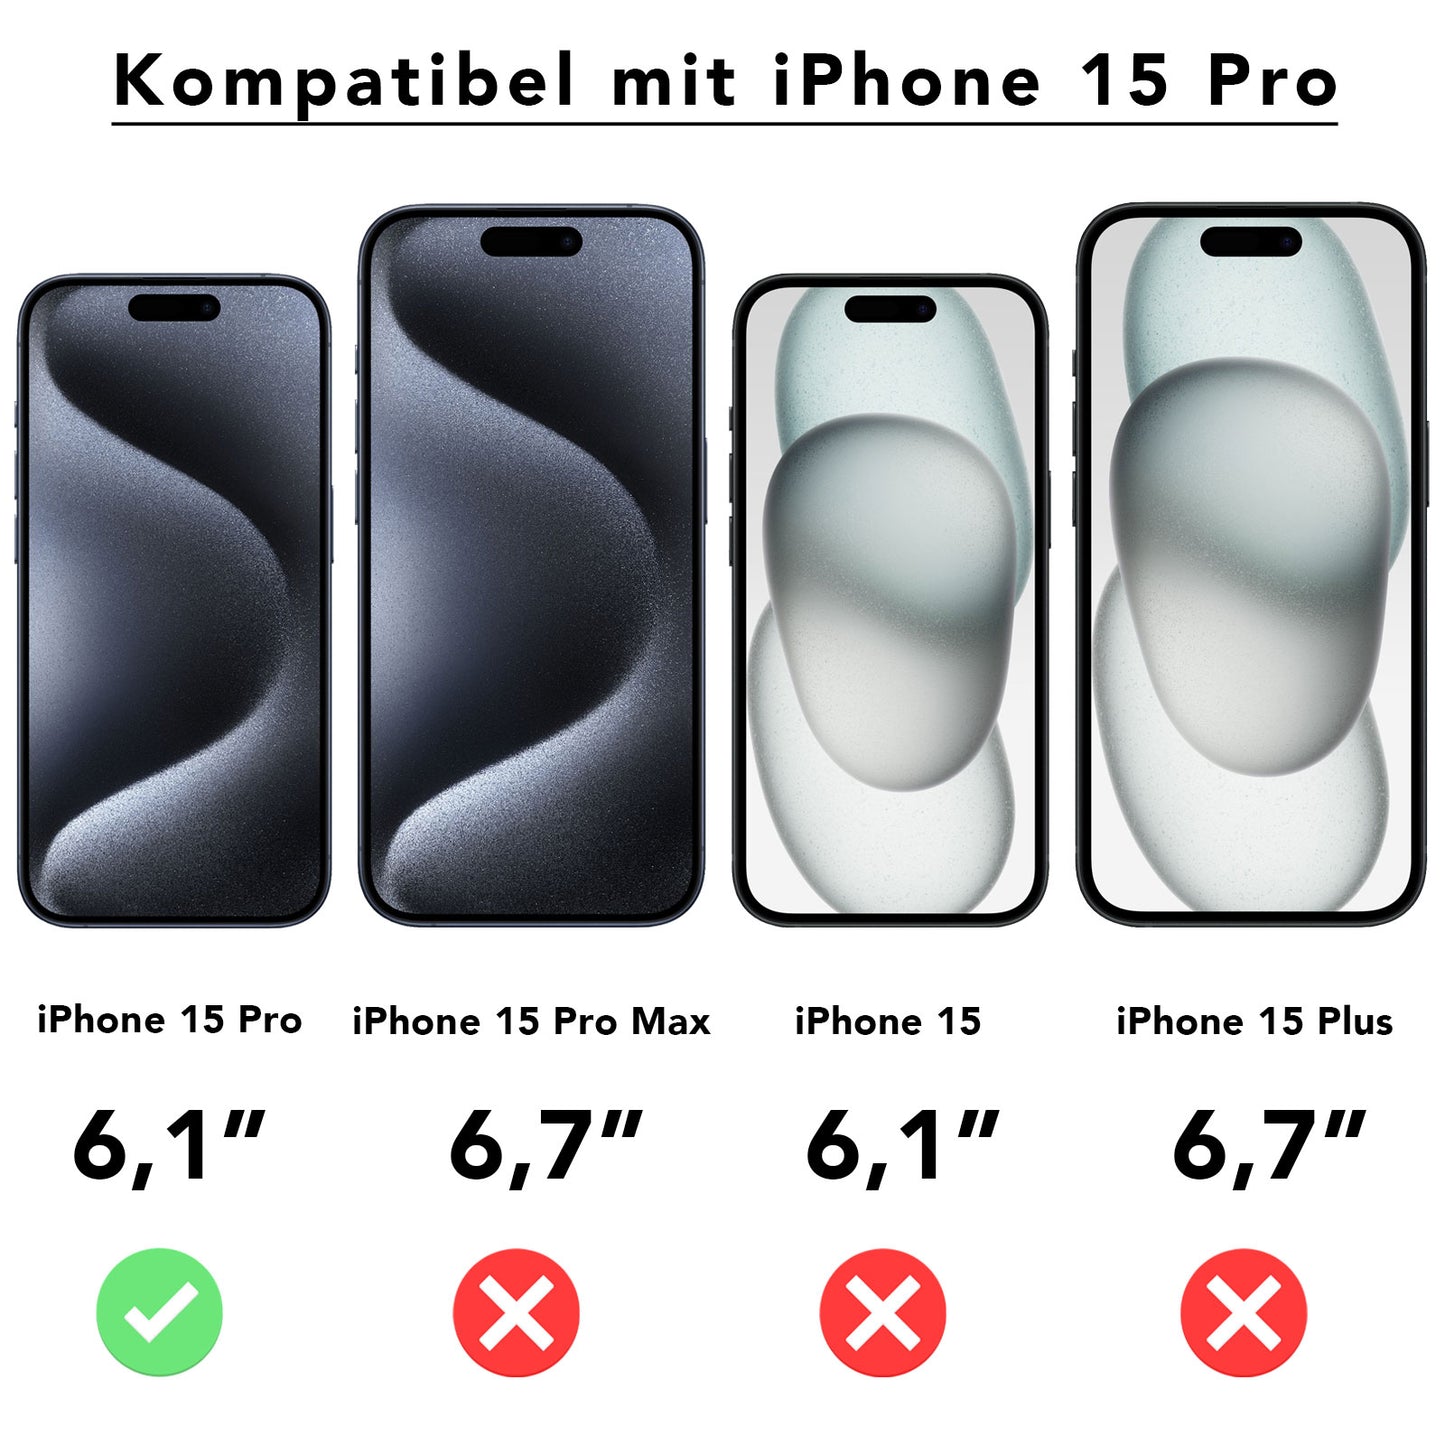 ArktisPRO iPhone 15 Pro FULL COVER Displayschutz GLAS - hüllenfreundlich - 3er Set